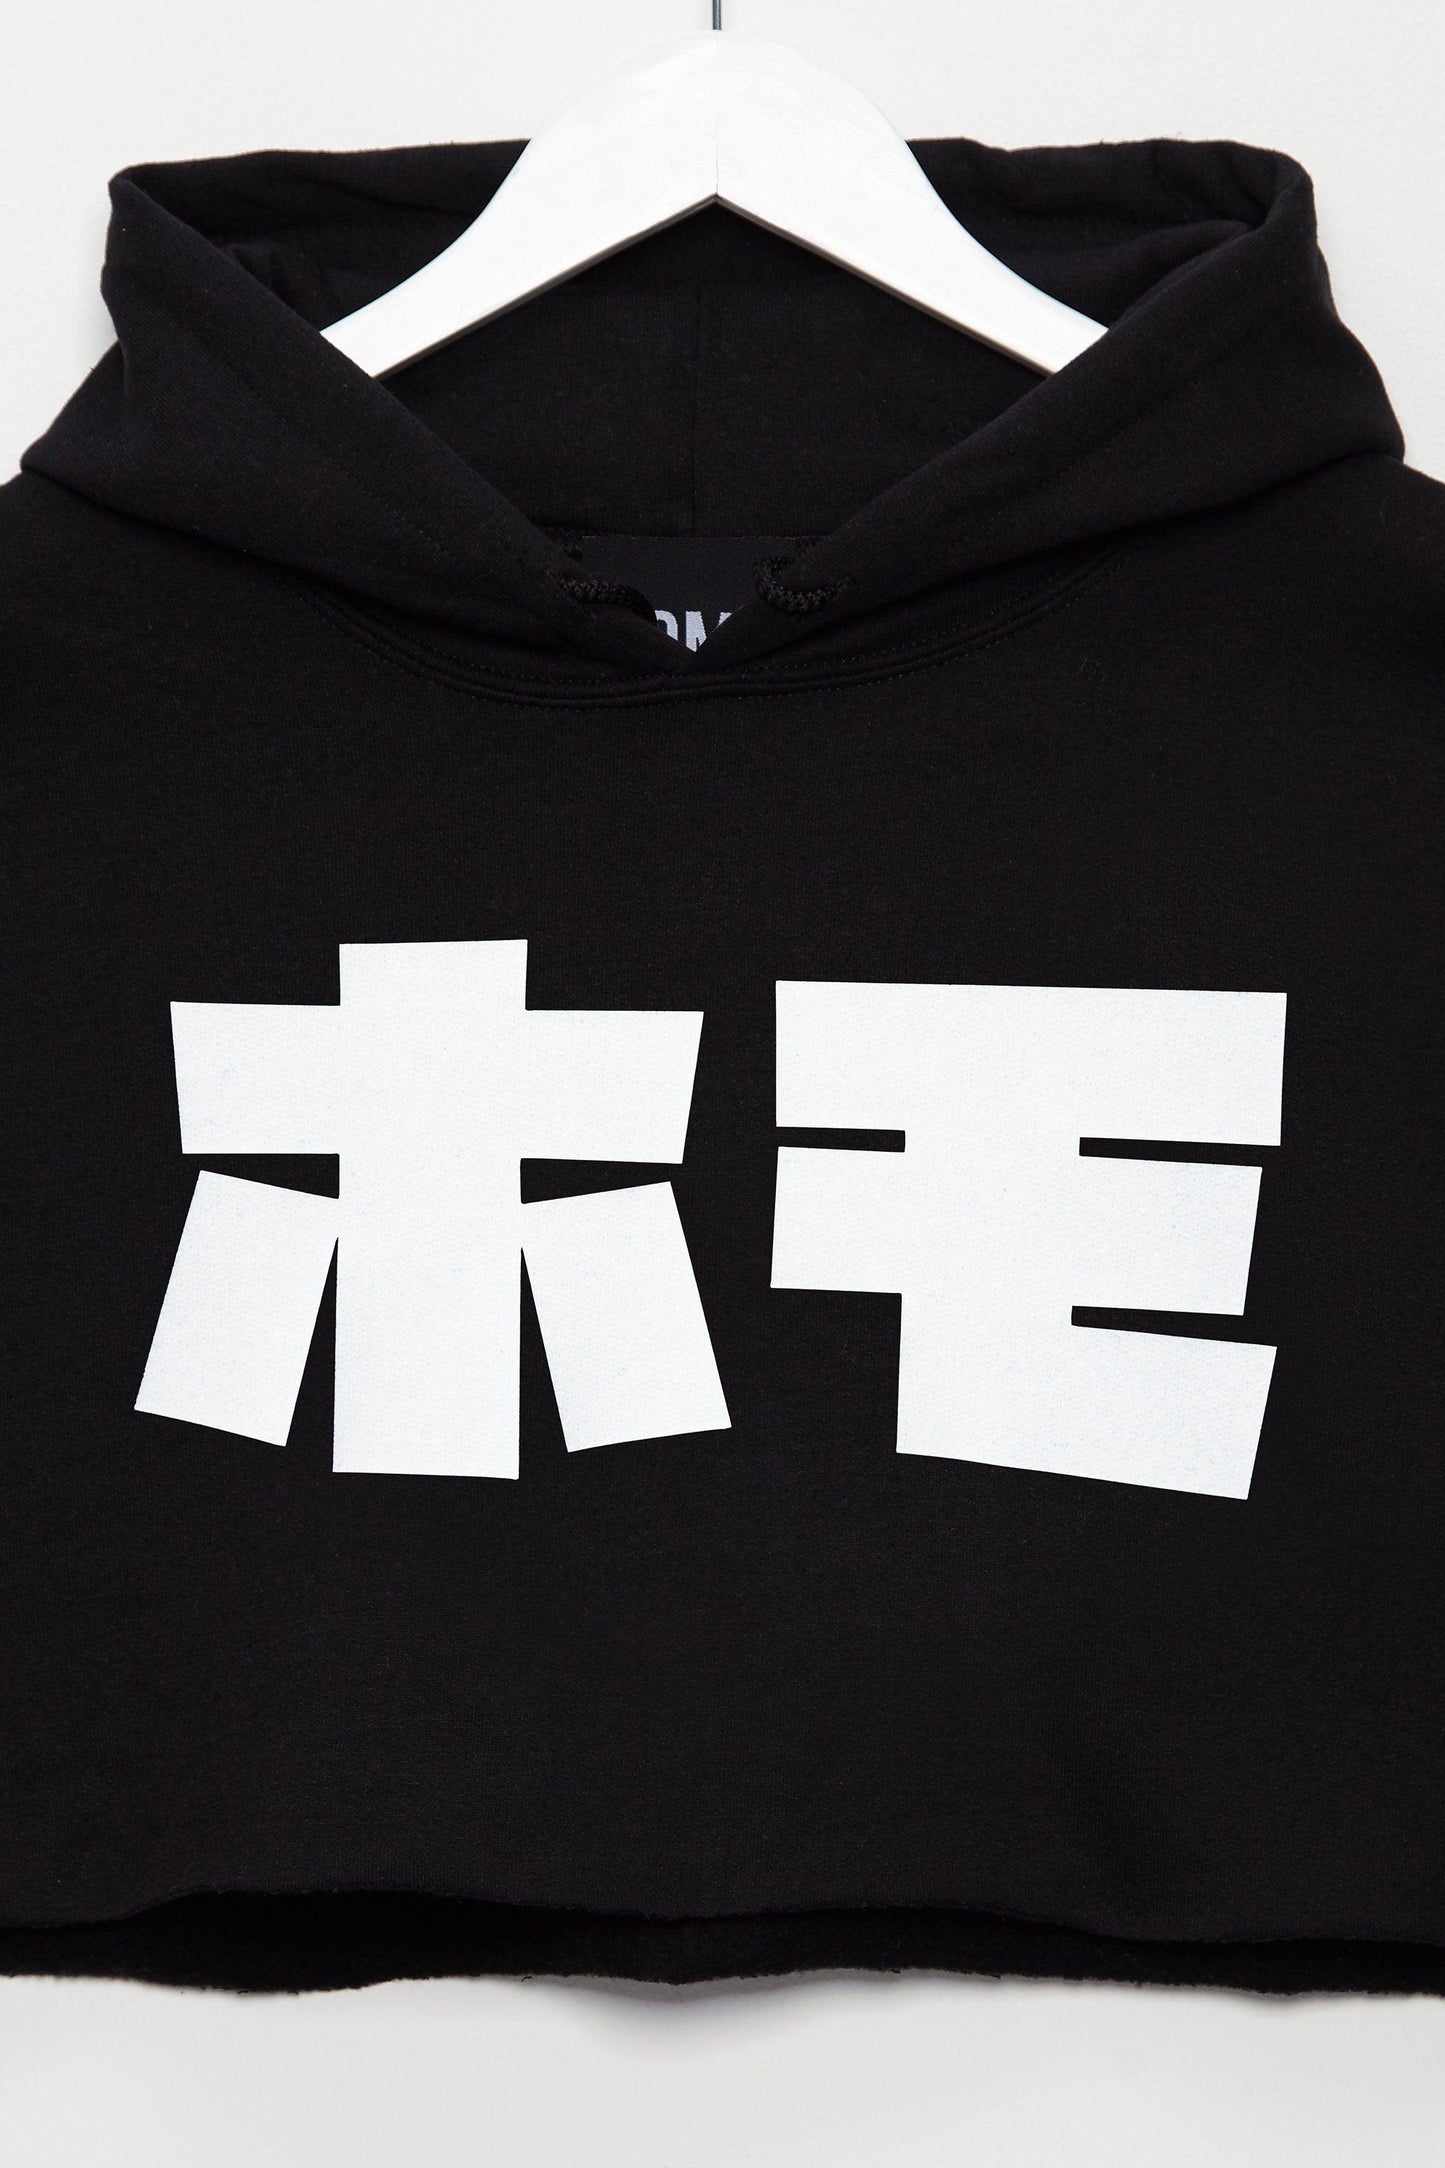 HOMO in Japanese, mens hoodie crop top - White on Black. - HOMOLONDON